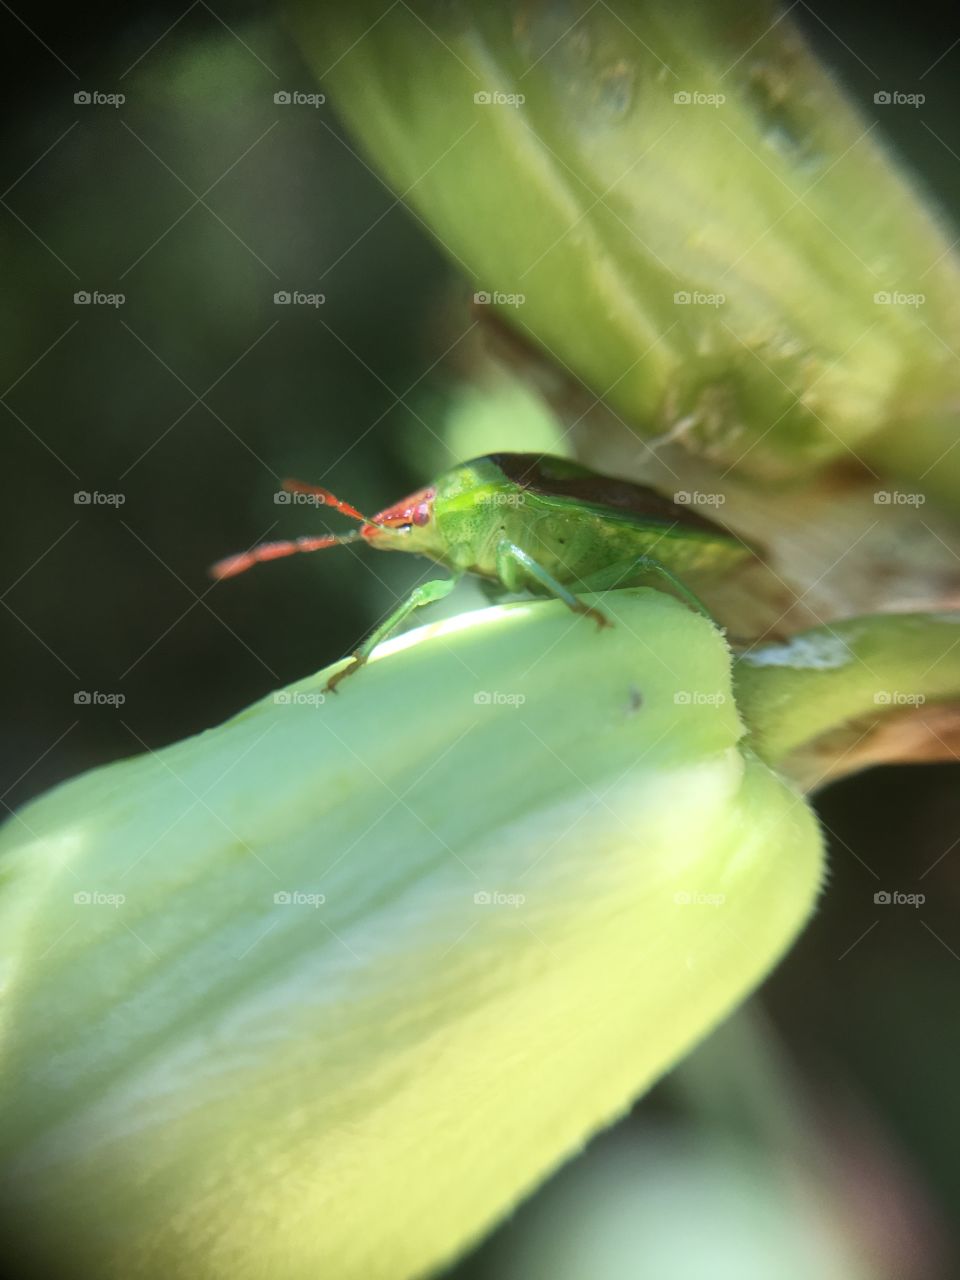 Beetle on yucca